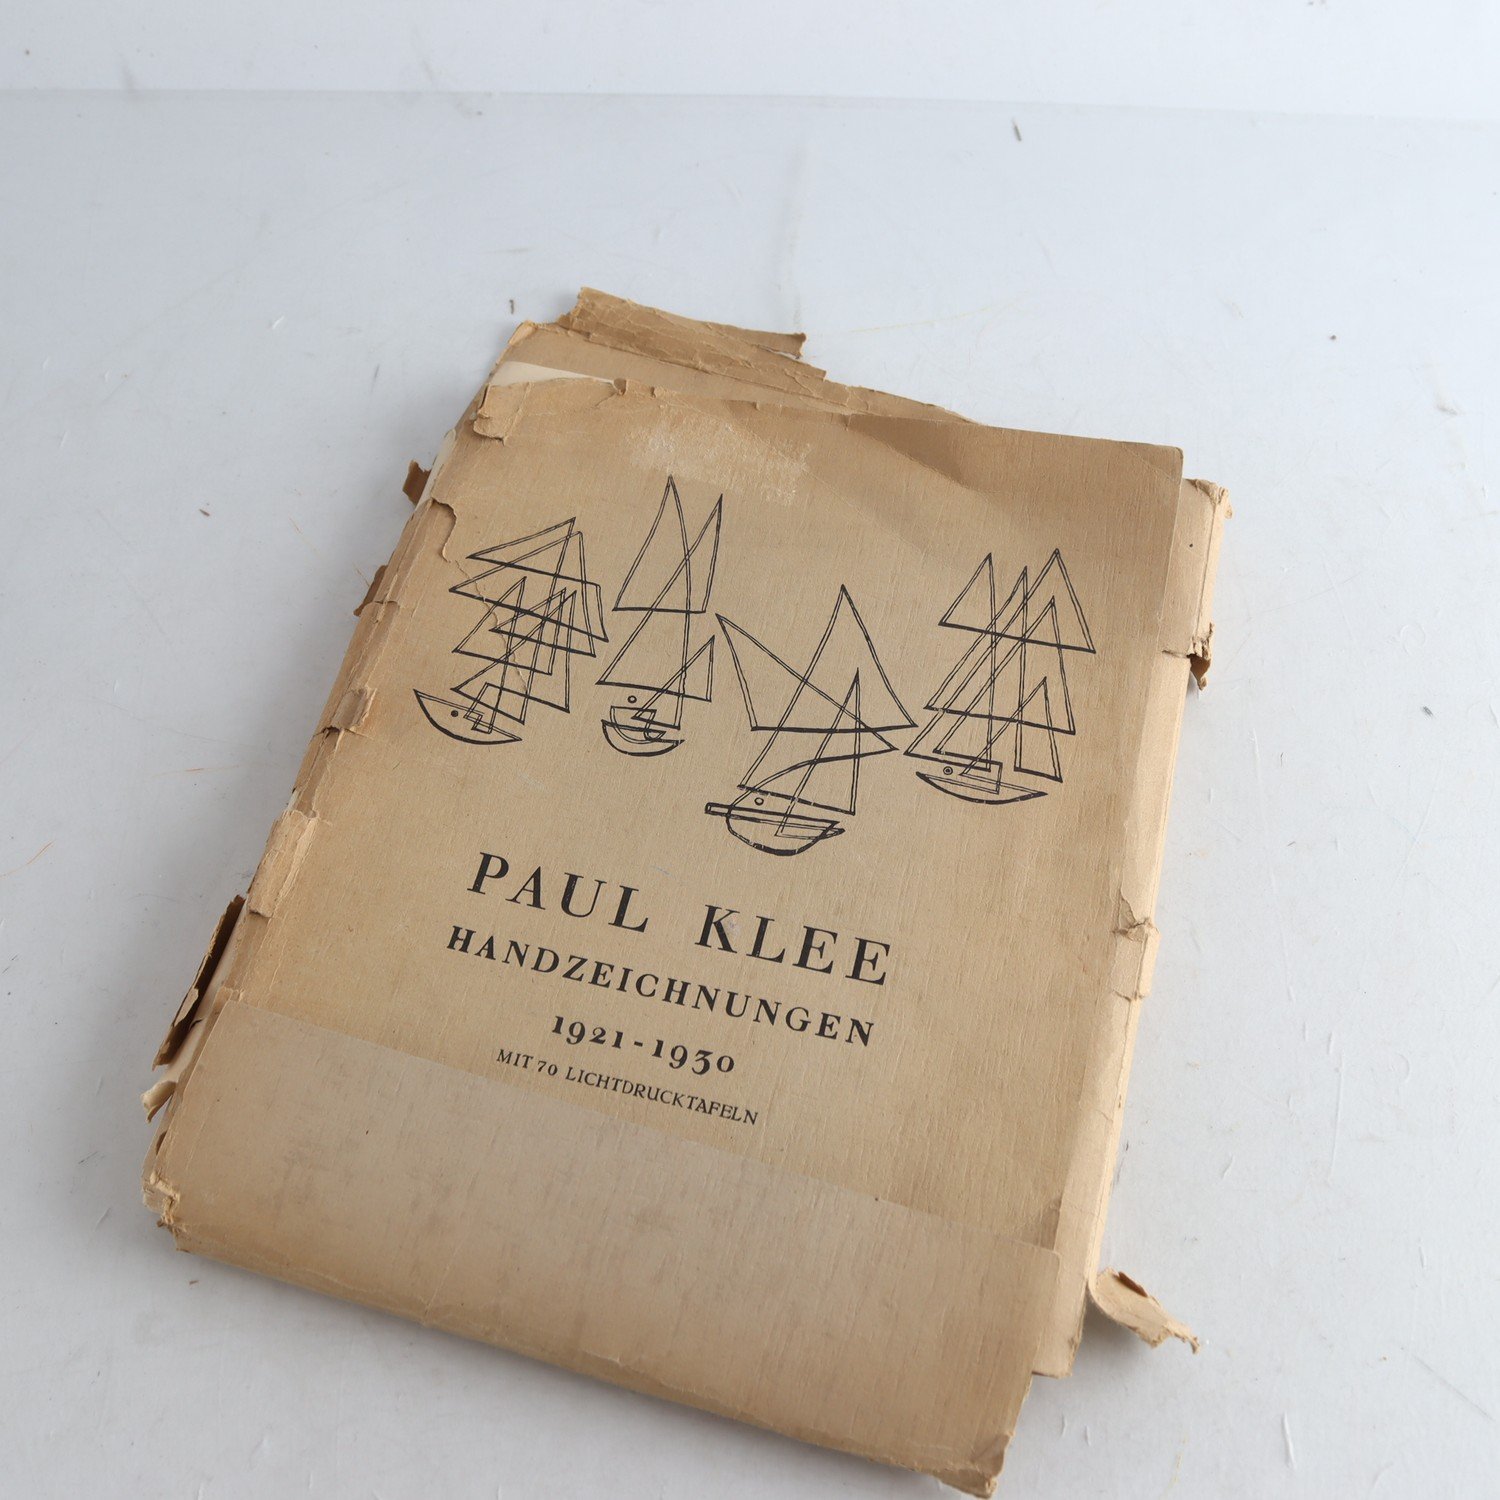 Katalog, ljustryck, Paul Klee, Handzeichnungen, (1921-1930)